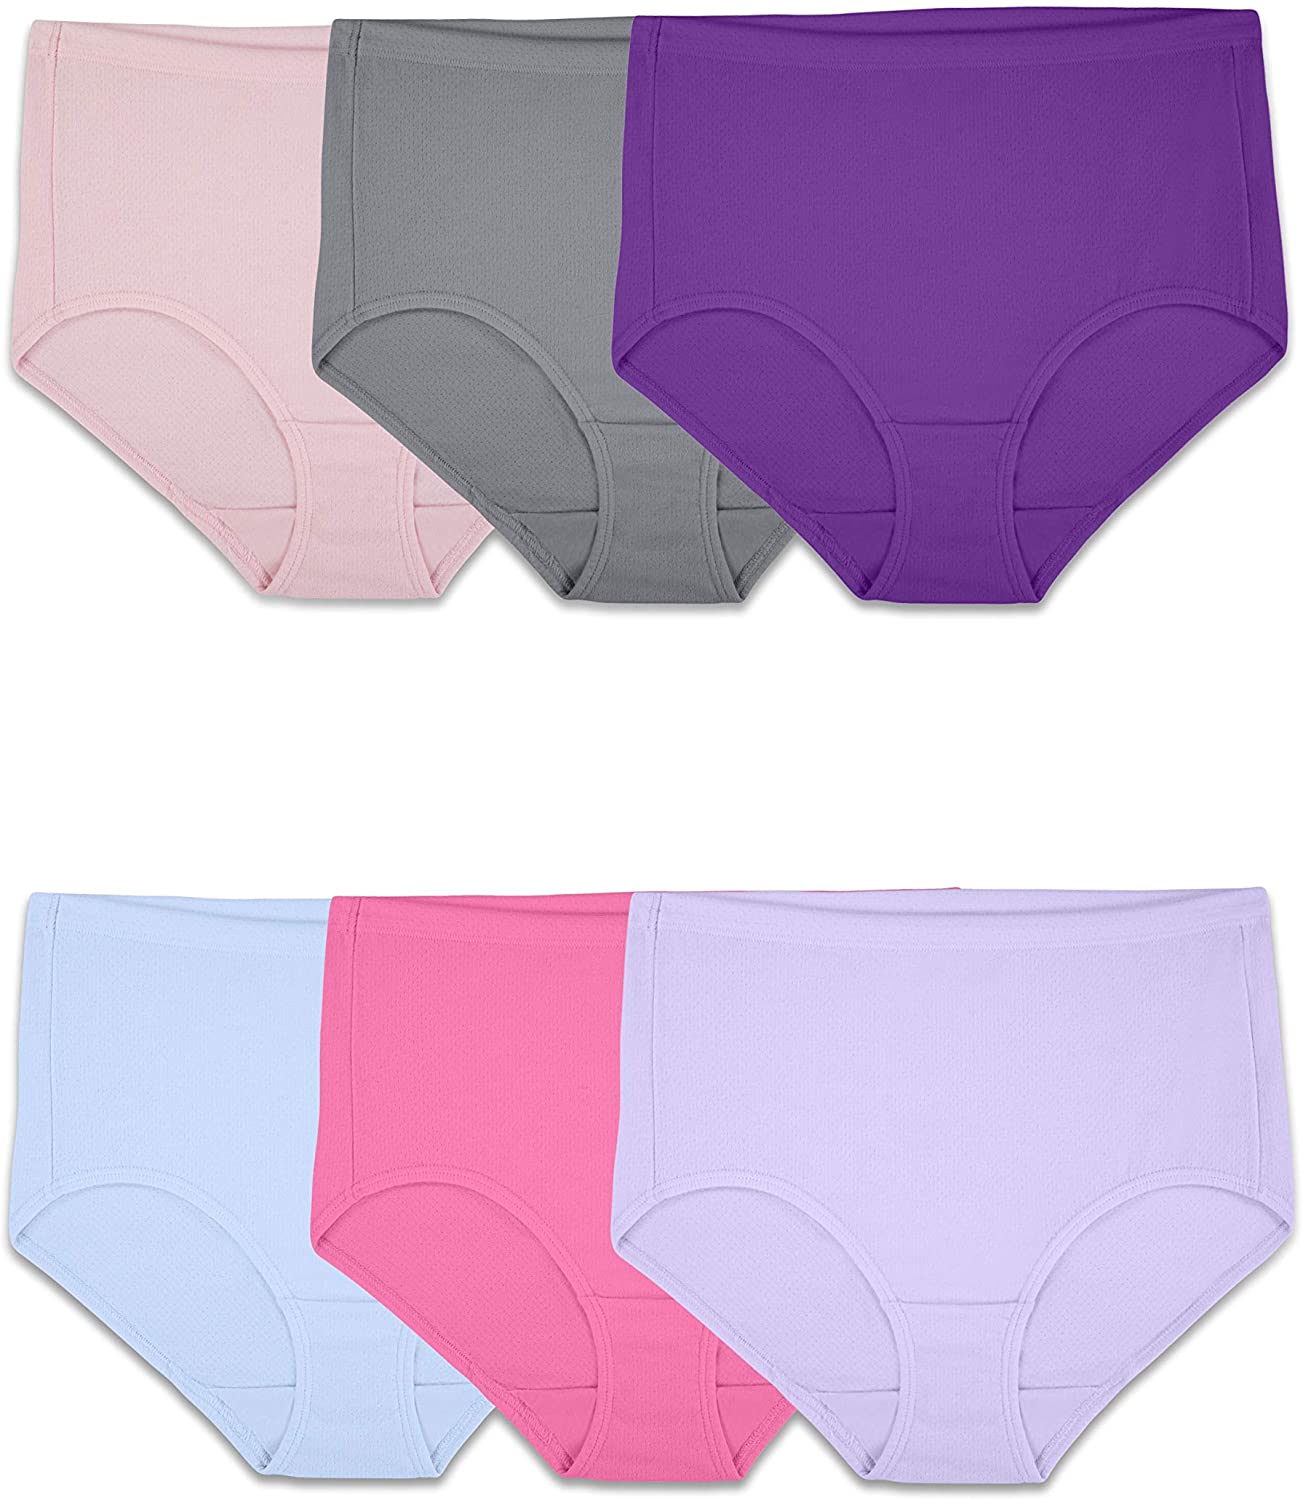 UMMISS Double Layer High Waist Underwear, 5-Pack